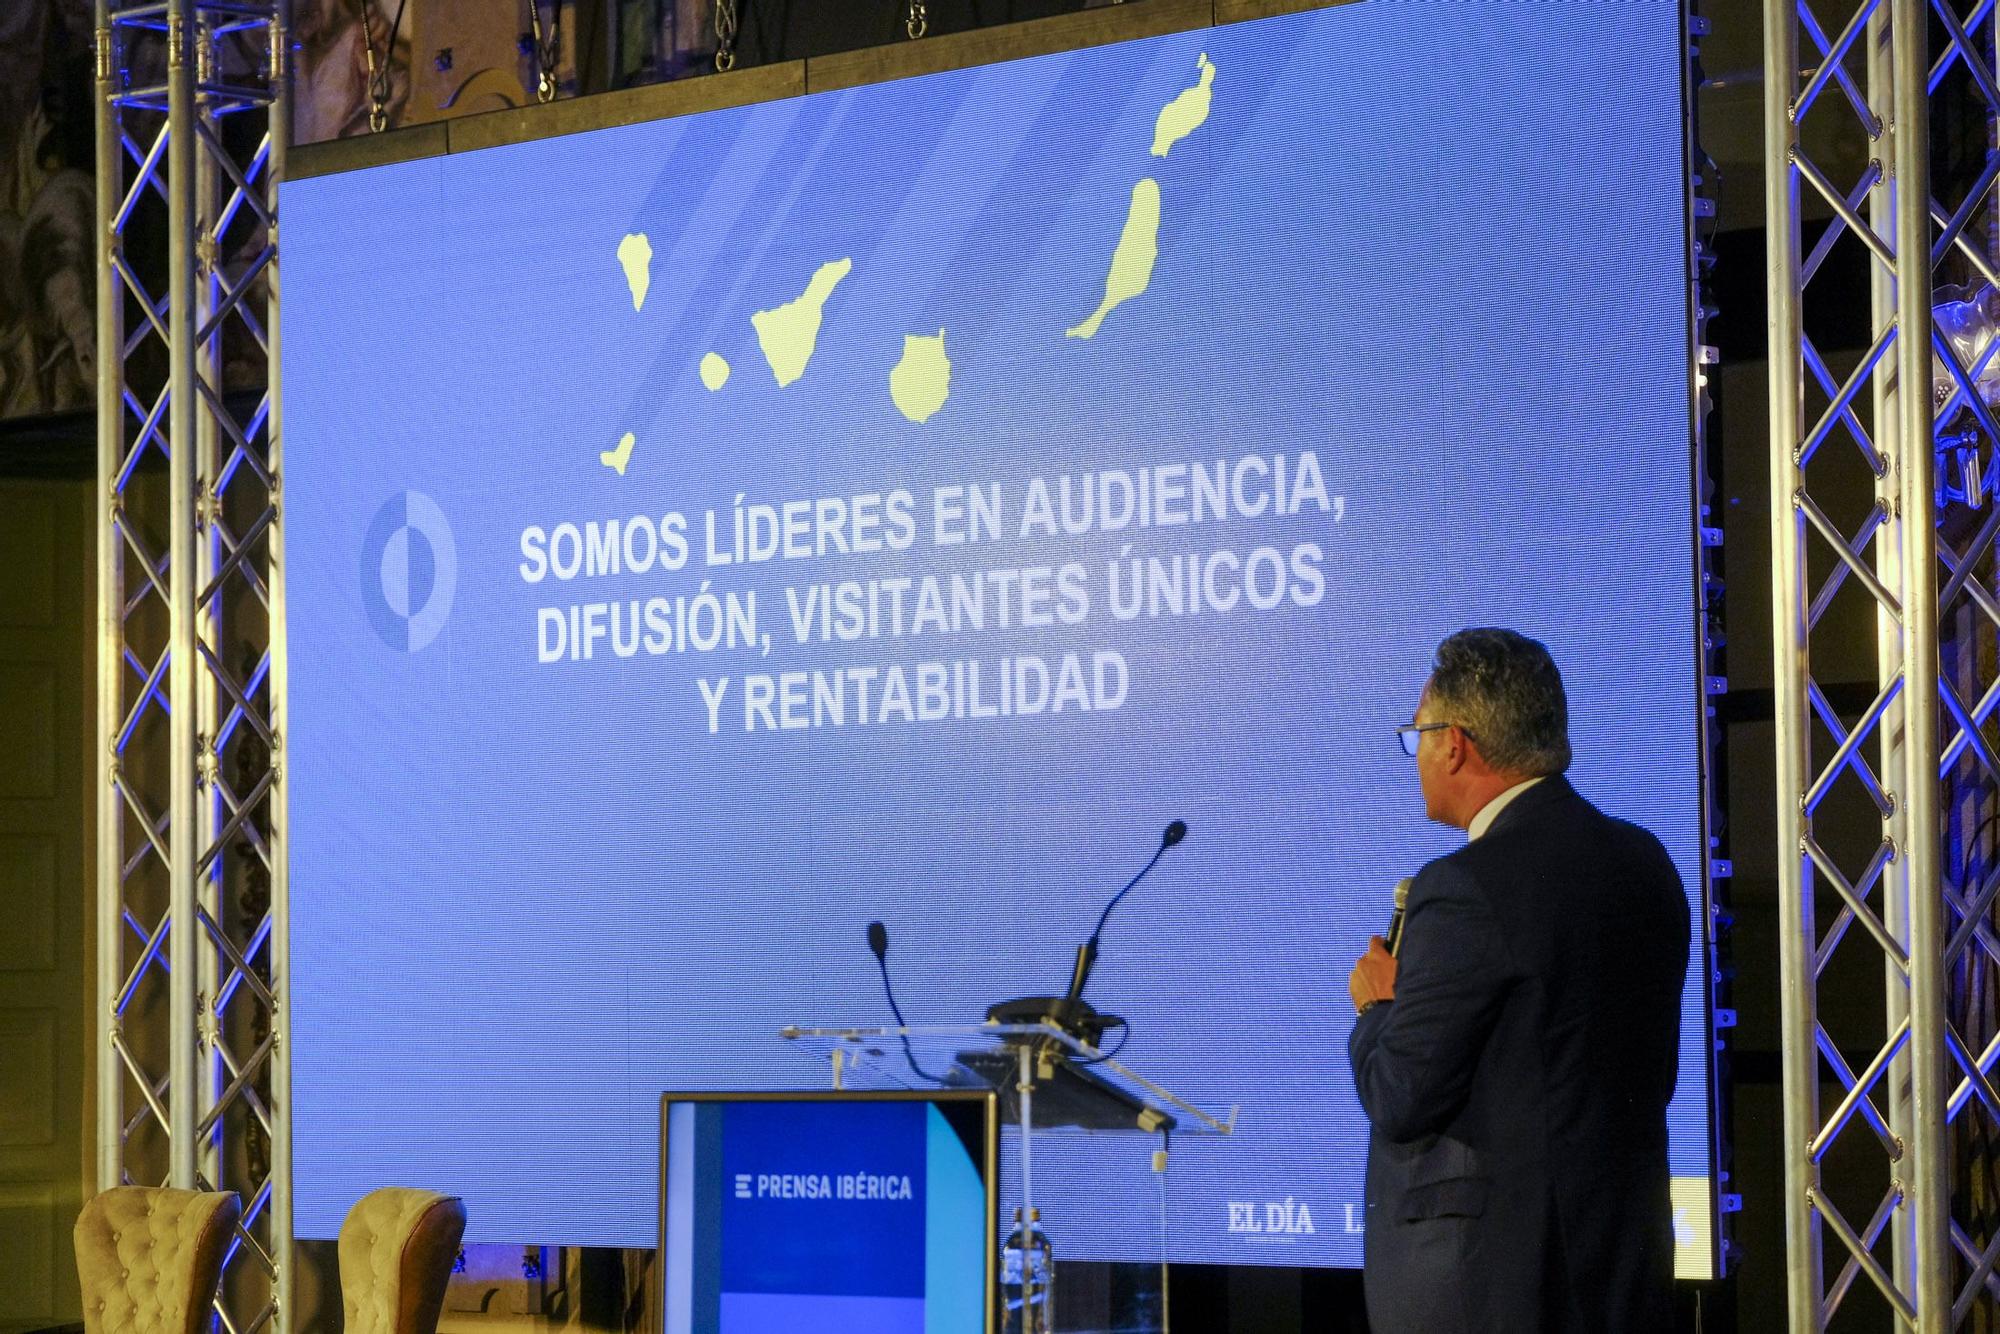 Francisco Moreno da a conocer los detalles de la alianza audiovisual de Mediaset con Prensa Ibérica